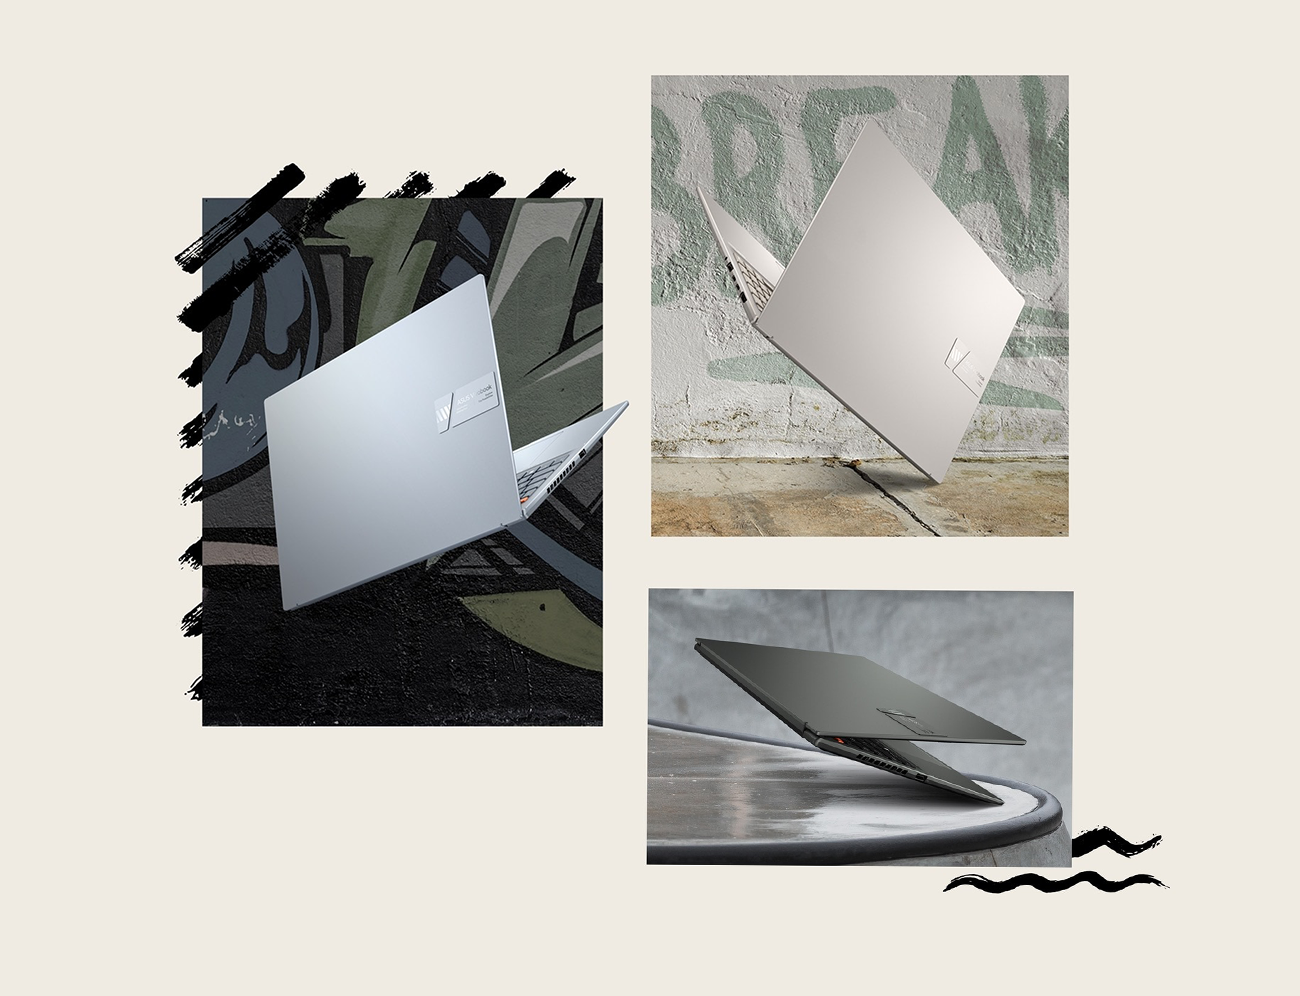 Štýlový notebook Asus VivoBook S 16X 